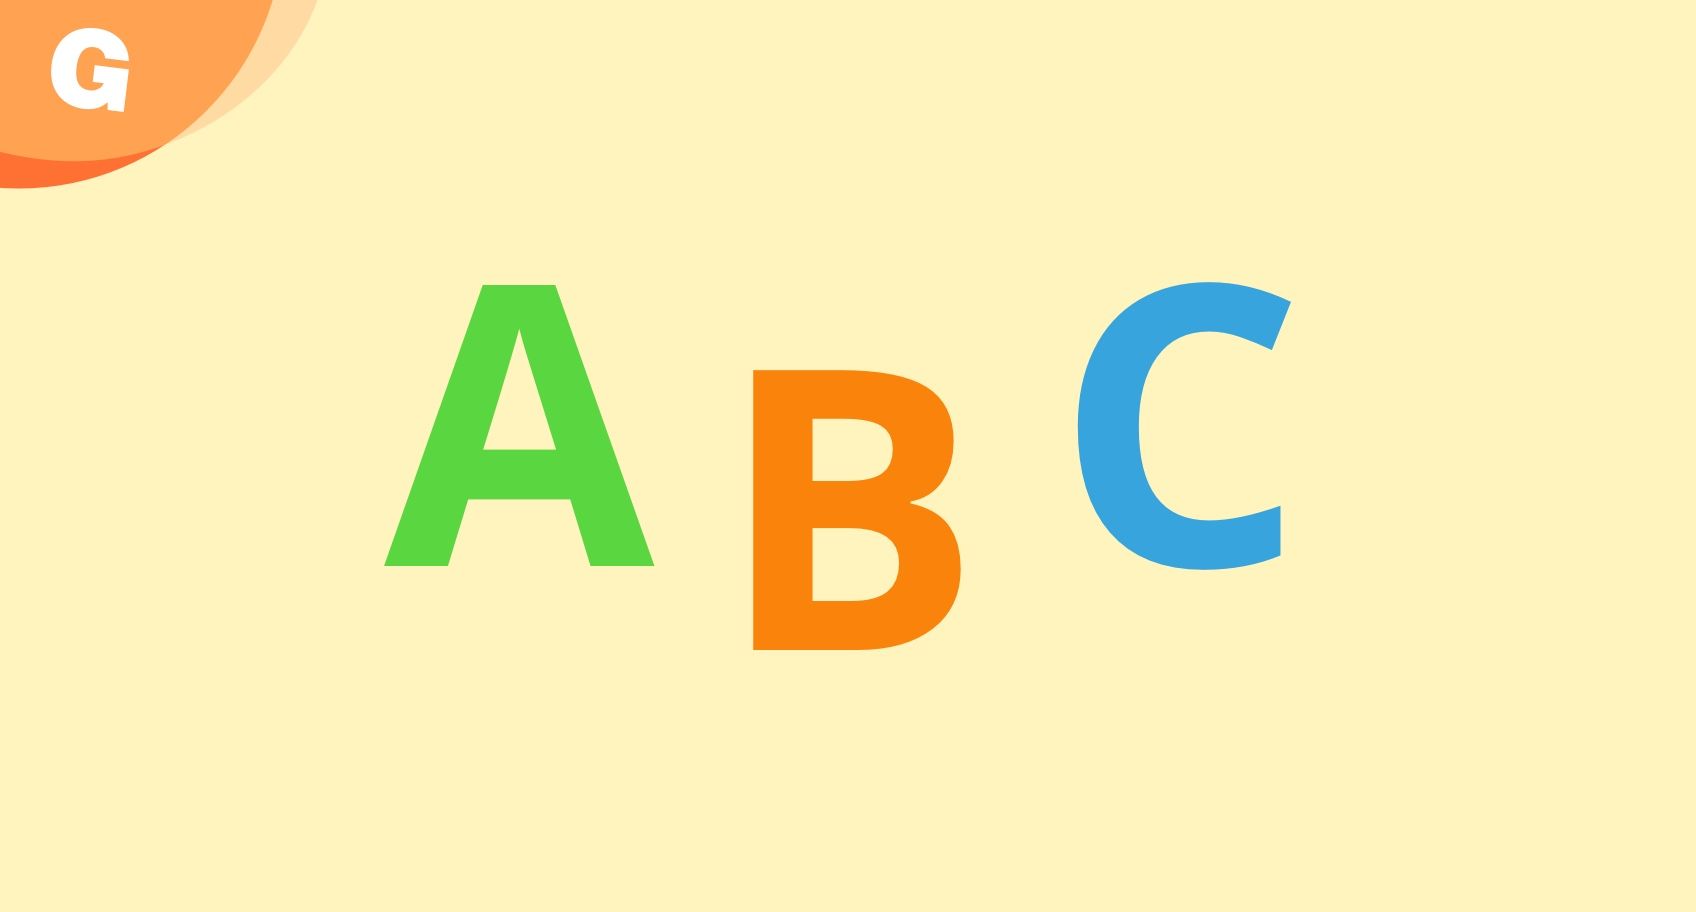 abc letters